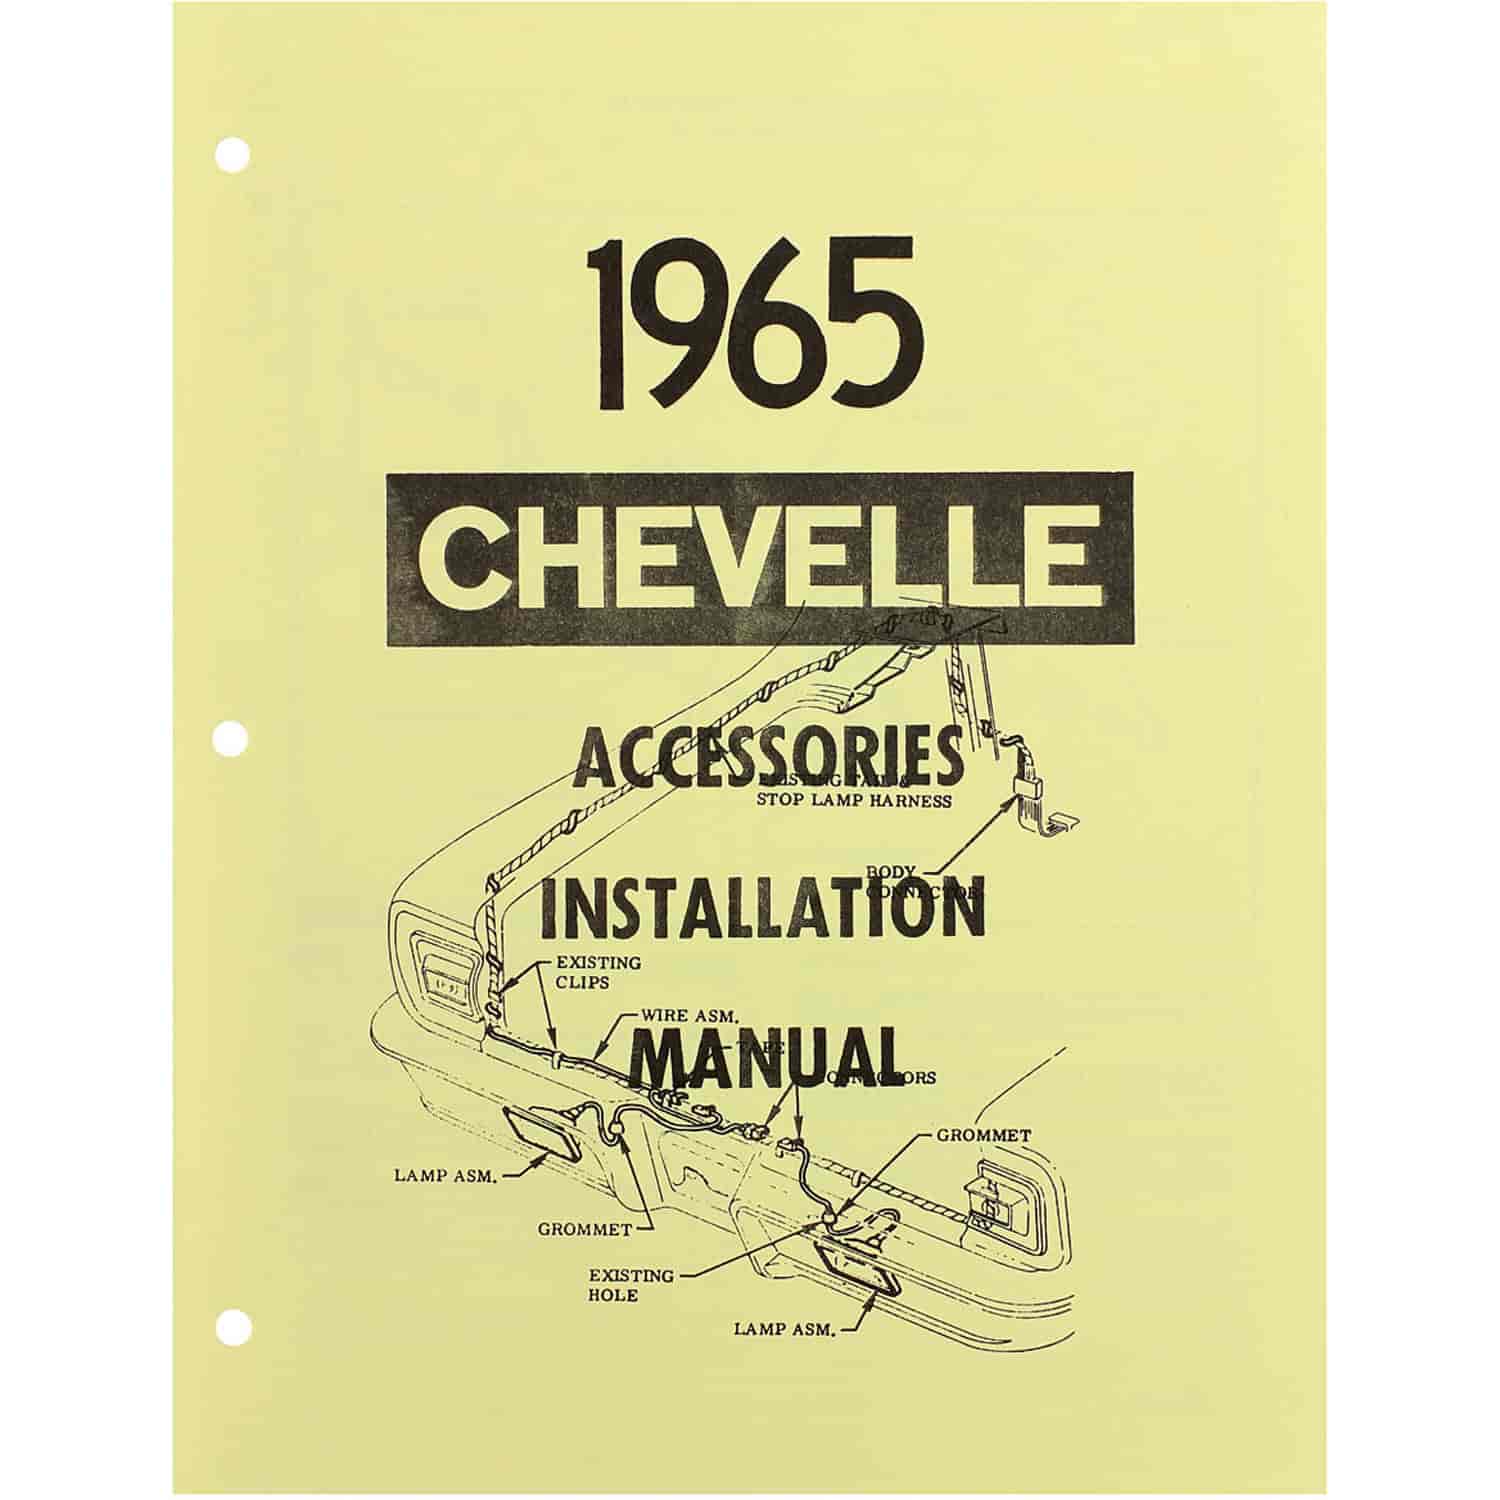 Manual Accessory Installation 1965 Chevelle/El Camino